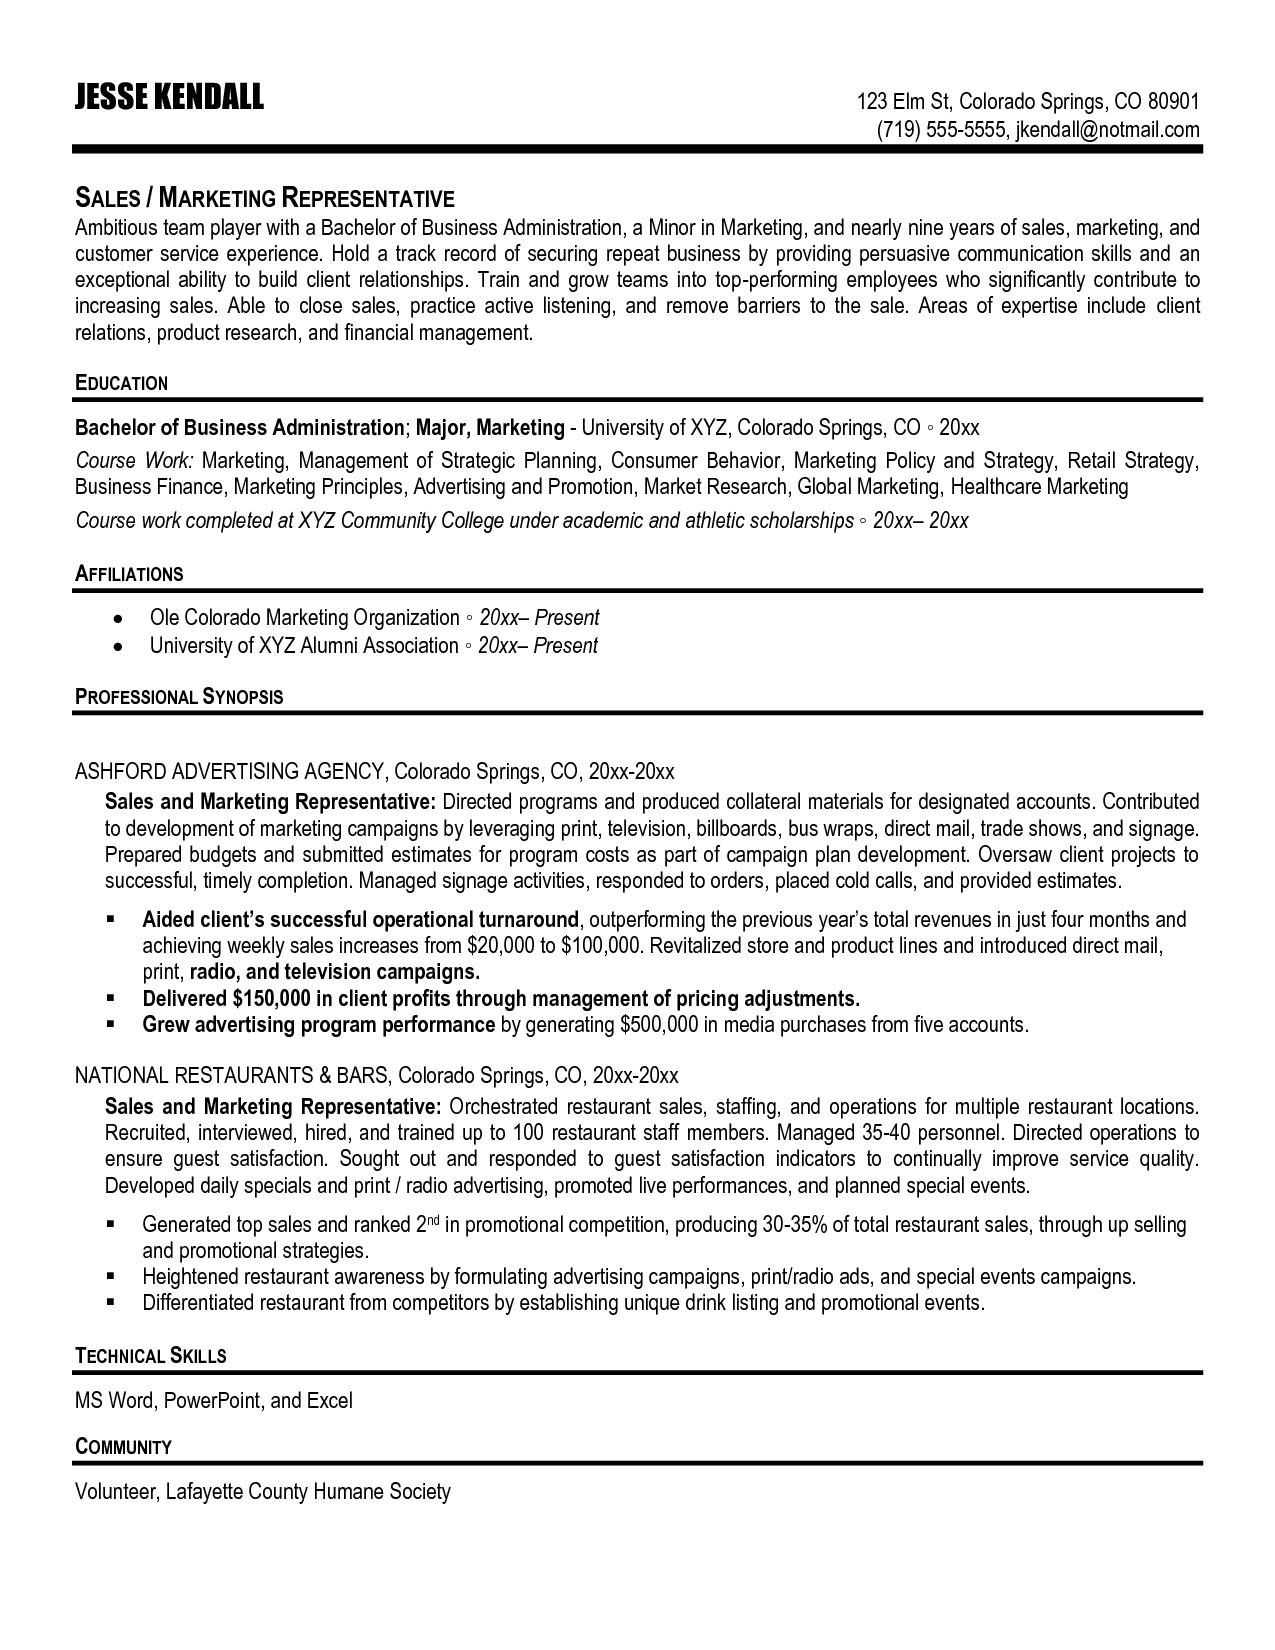 Sample Resume for Verizon Wireless Sales Rep Sale Representative Resume Sample September 2021